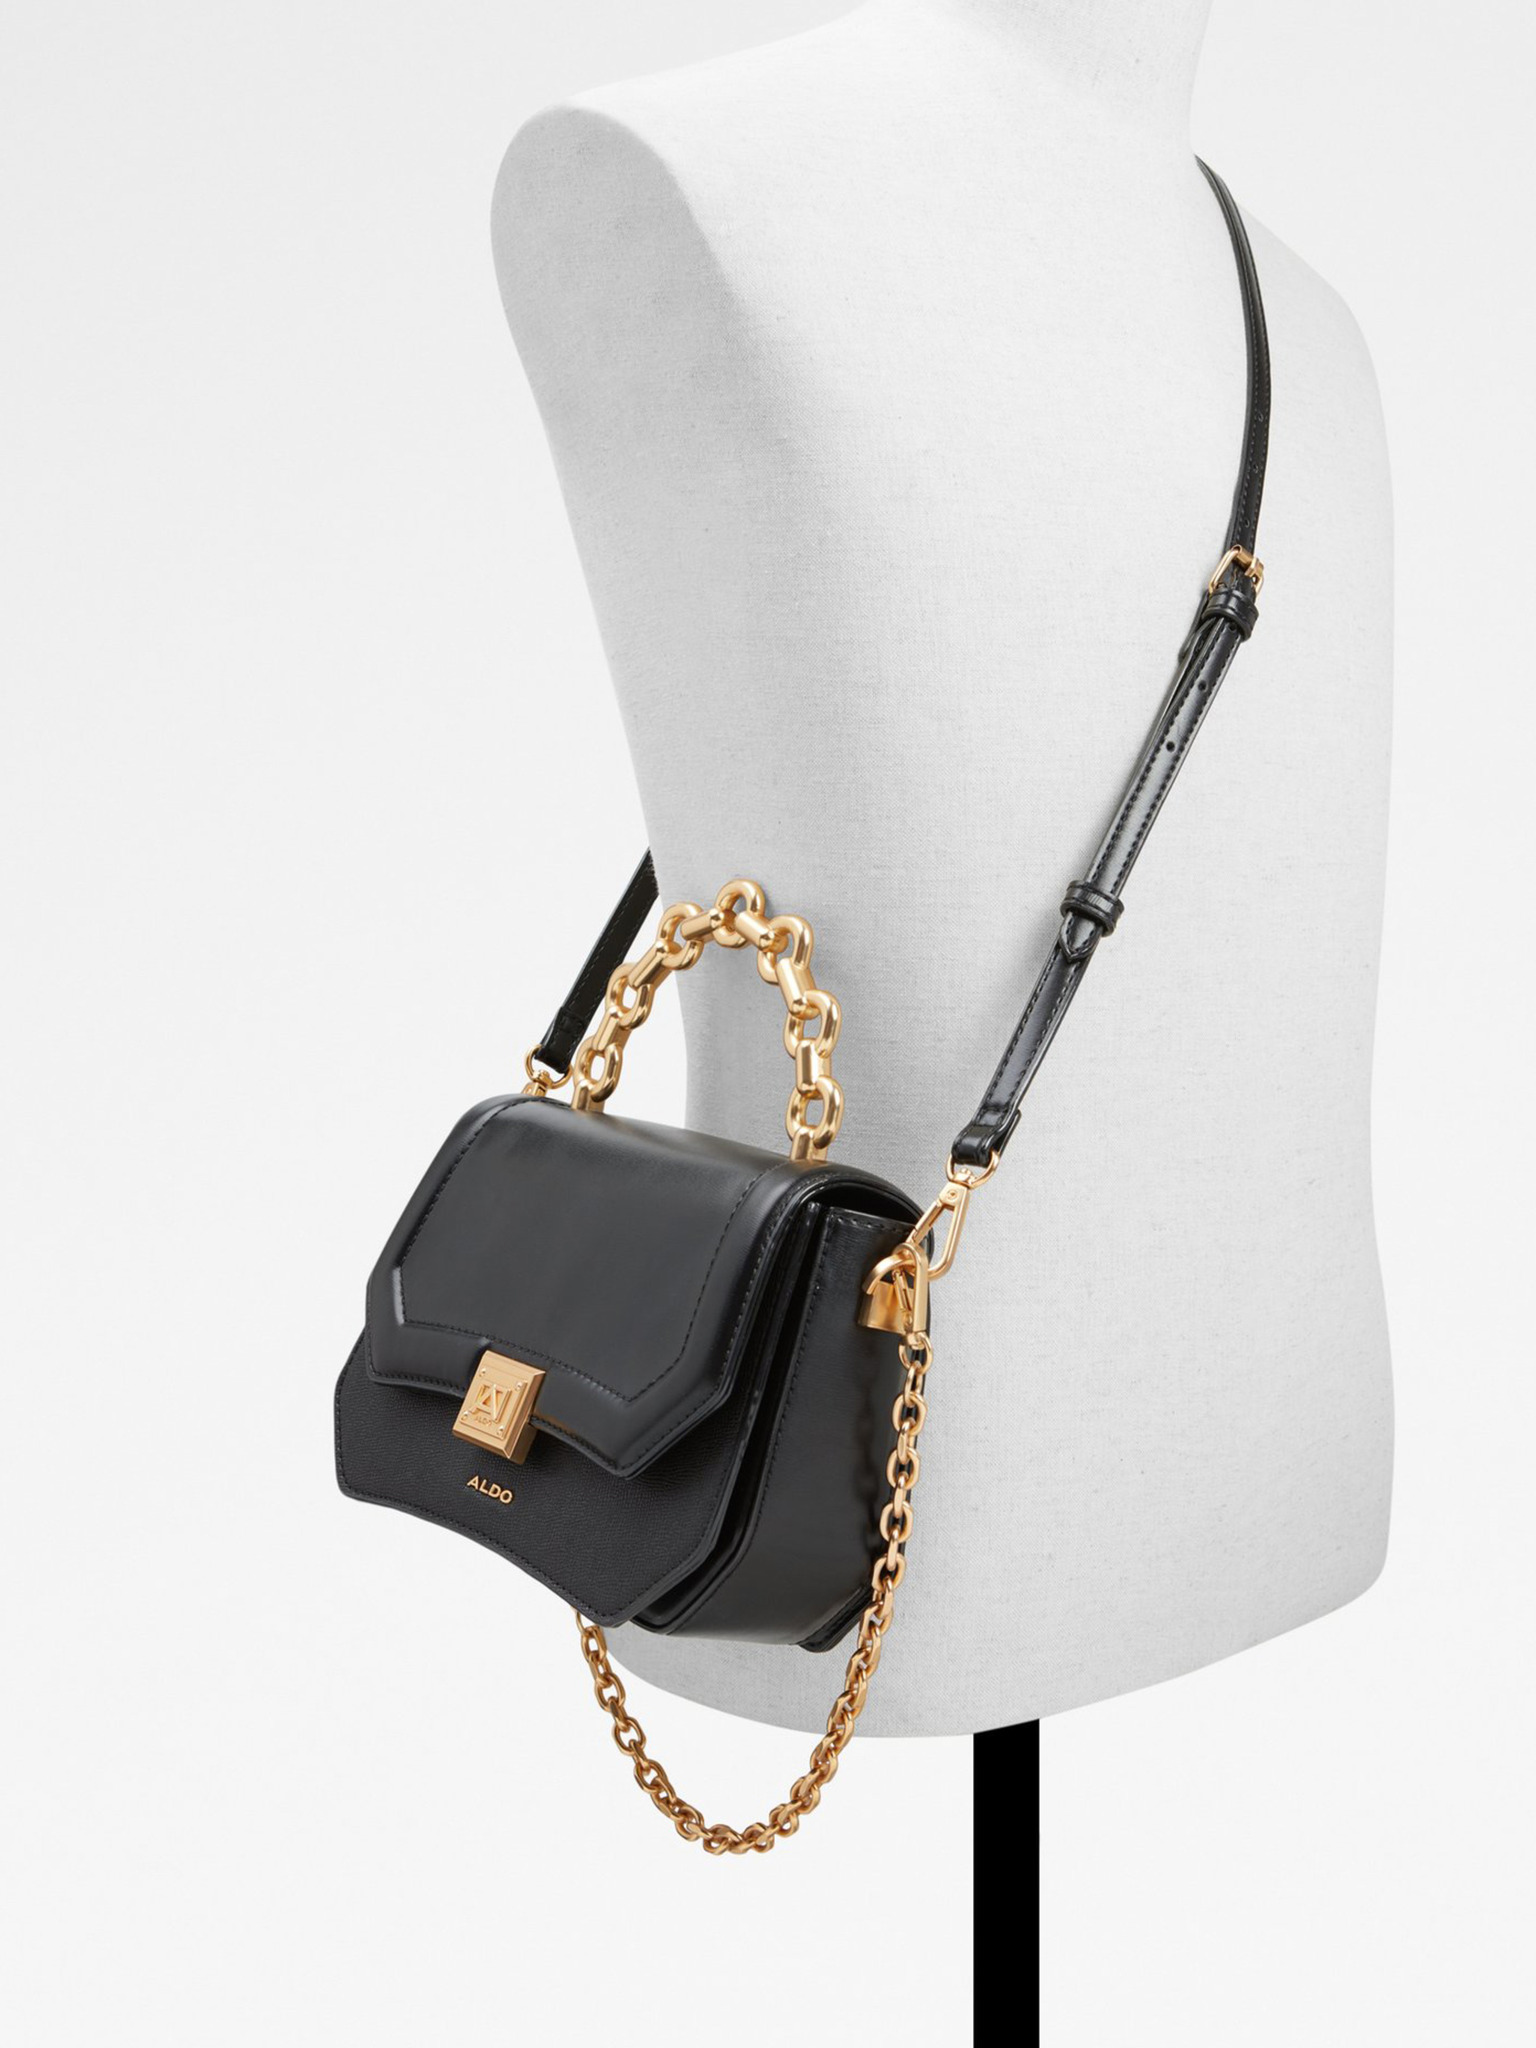 Black classy Aldo purse  Aldo purses, Aldo handbags, Black bag outfit